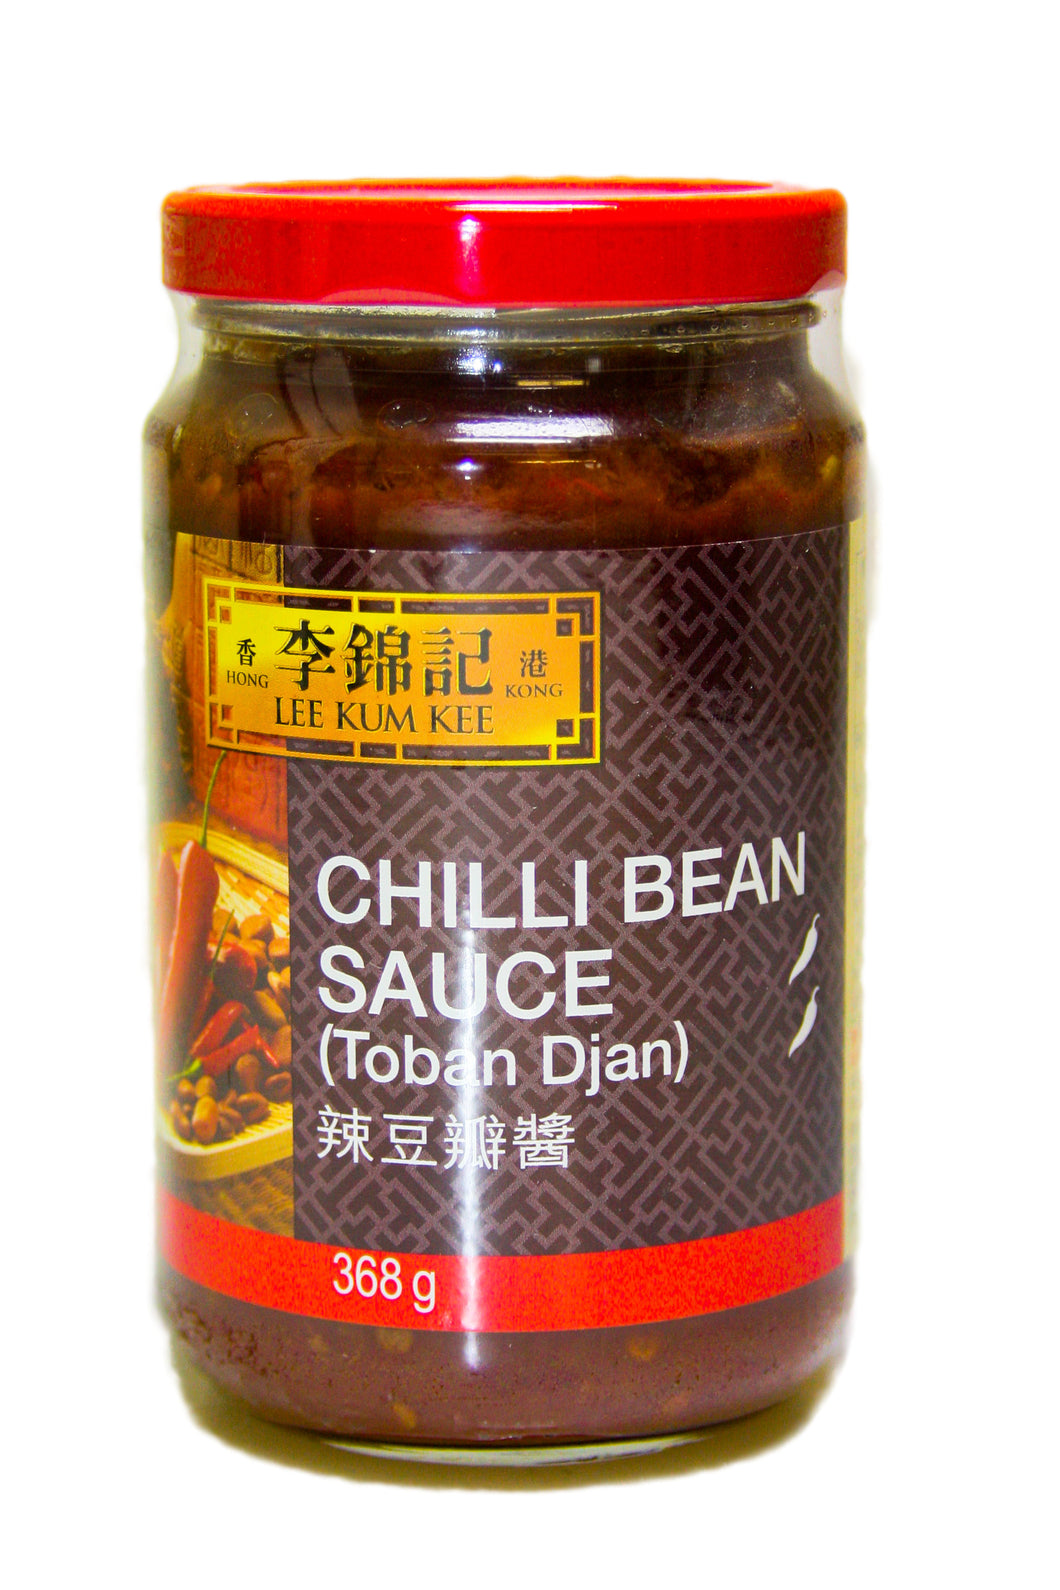 LKK Chili Bohnen Sauce Toban Djan